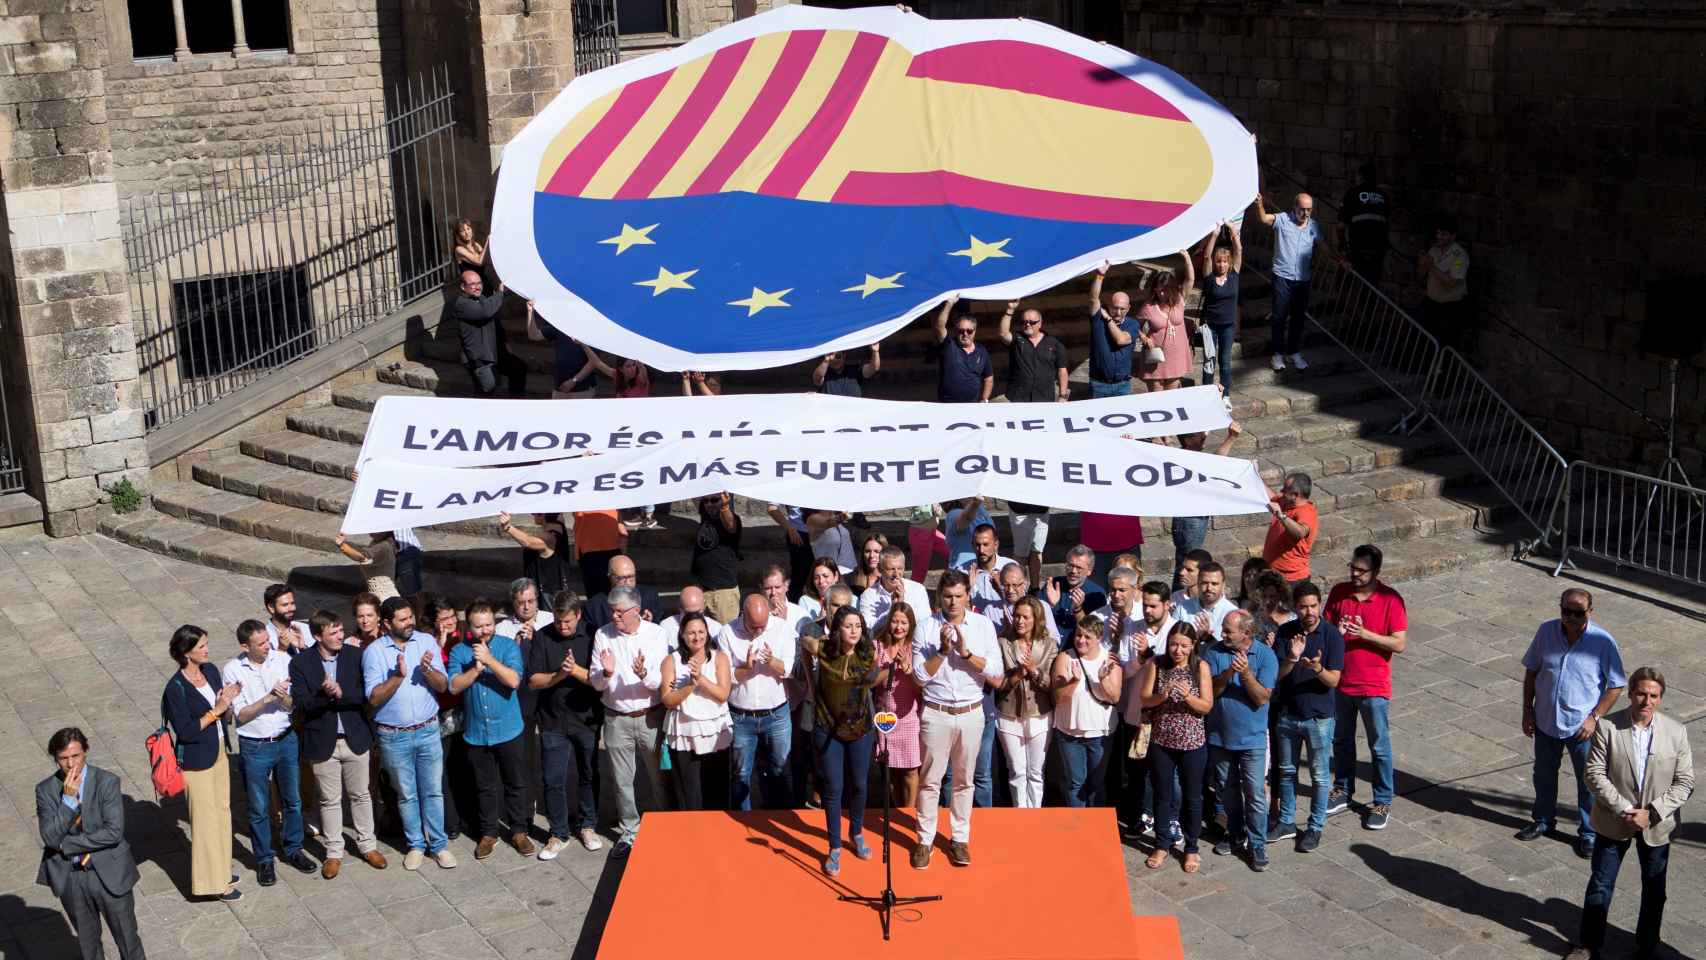 Miembros de Cs en el Ayuntamiento de Barcelona, durante un acto, bajo el lema El amor es más fuerte que el odio.